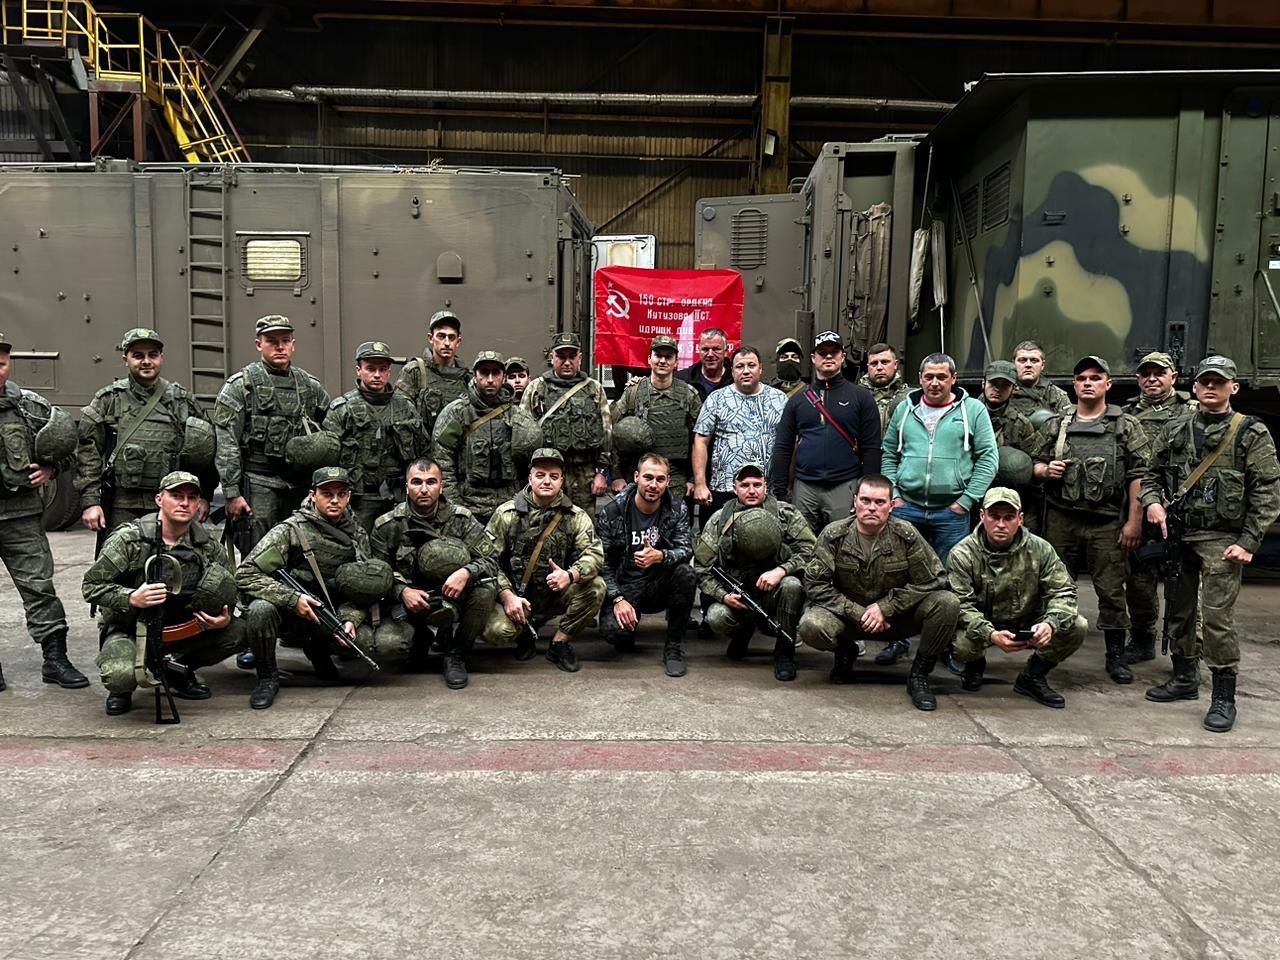 Глава Волчанска лично съездил в ДНР и передал гуманитарную помощь